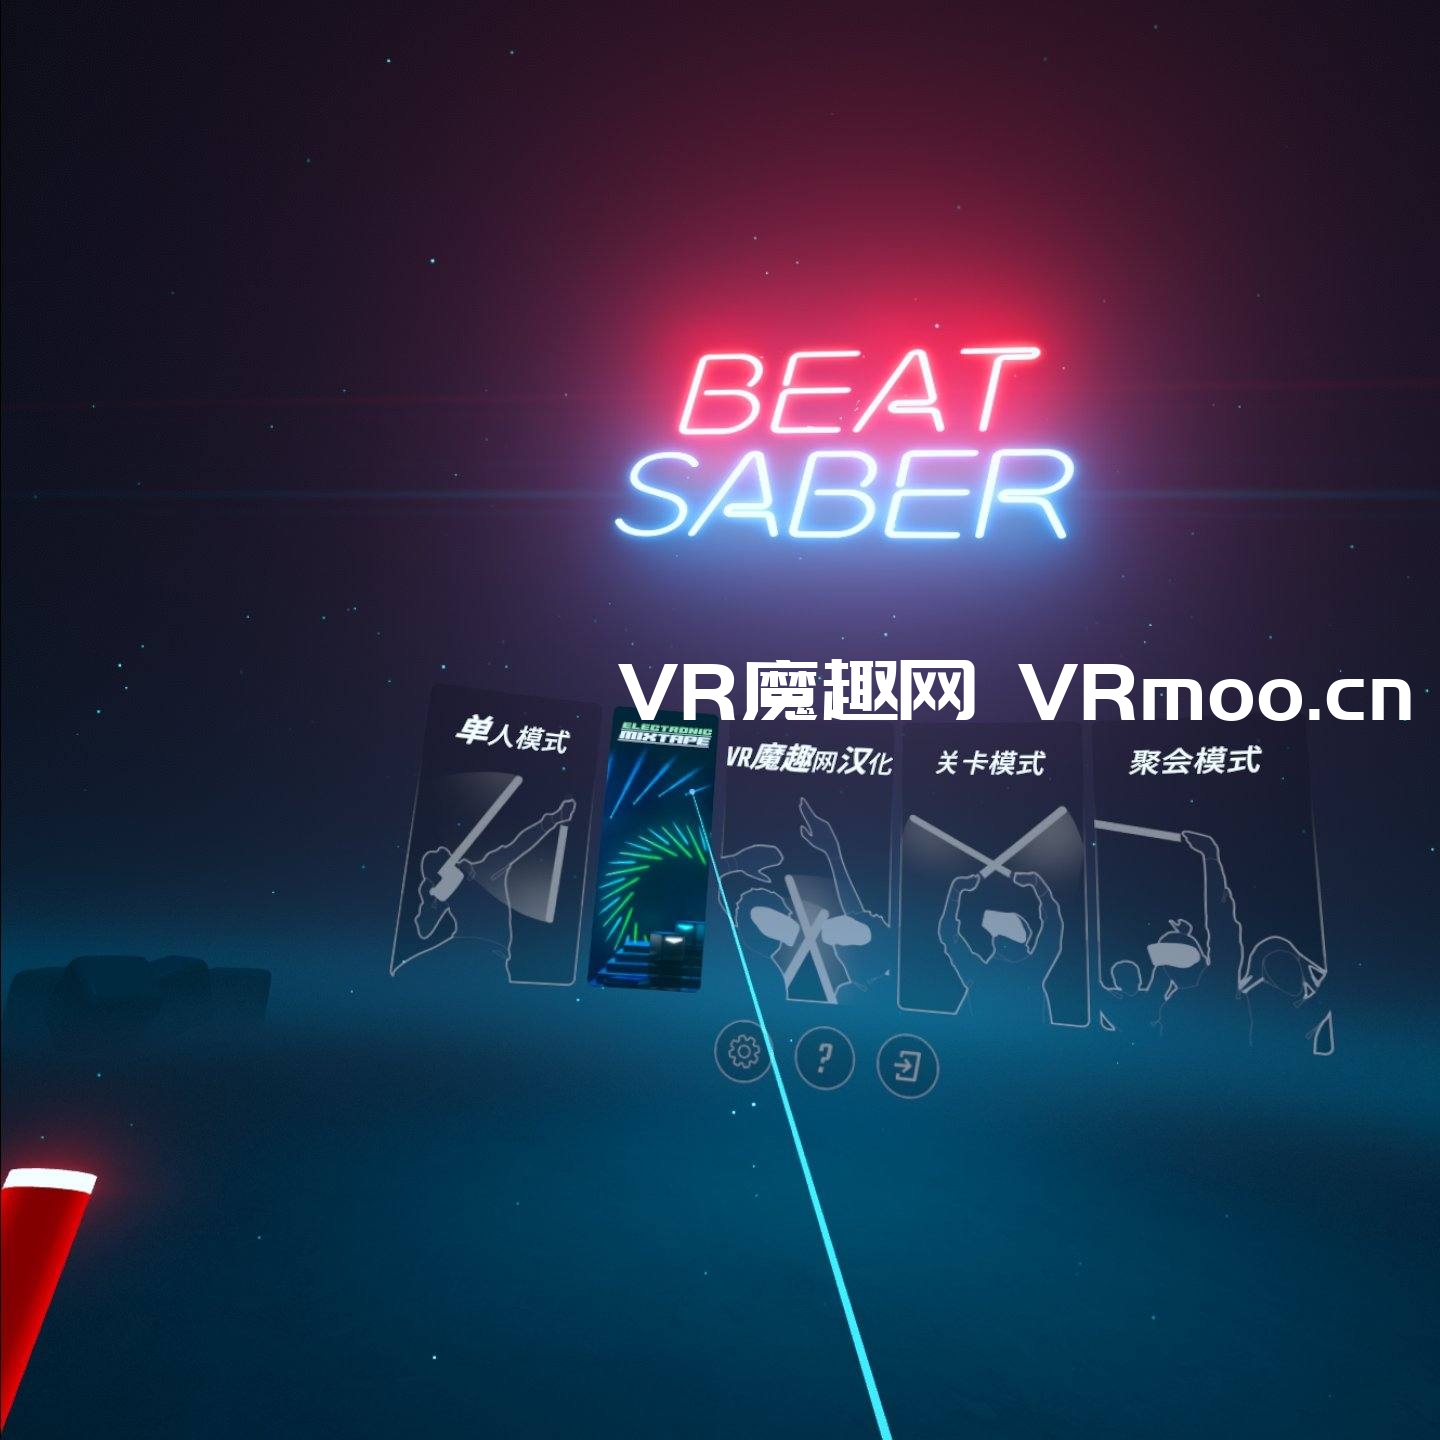 光剑节奏汉化整合千首中文歌曲版（Beat Saber VR）全DLC解锁懒人带自定义歌曲版